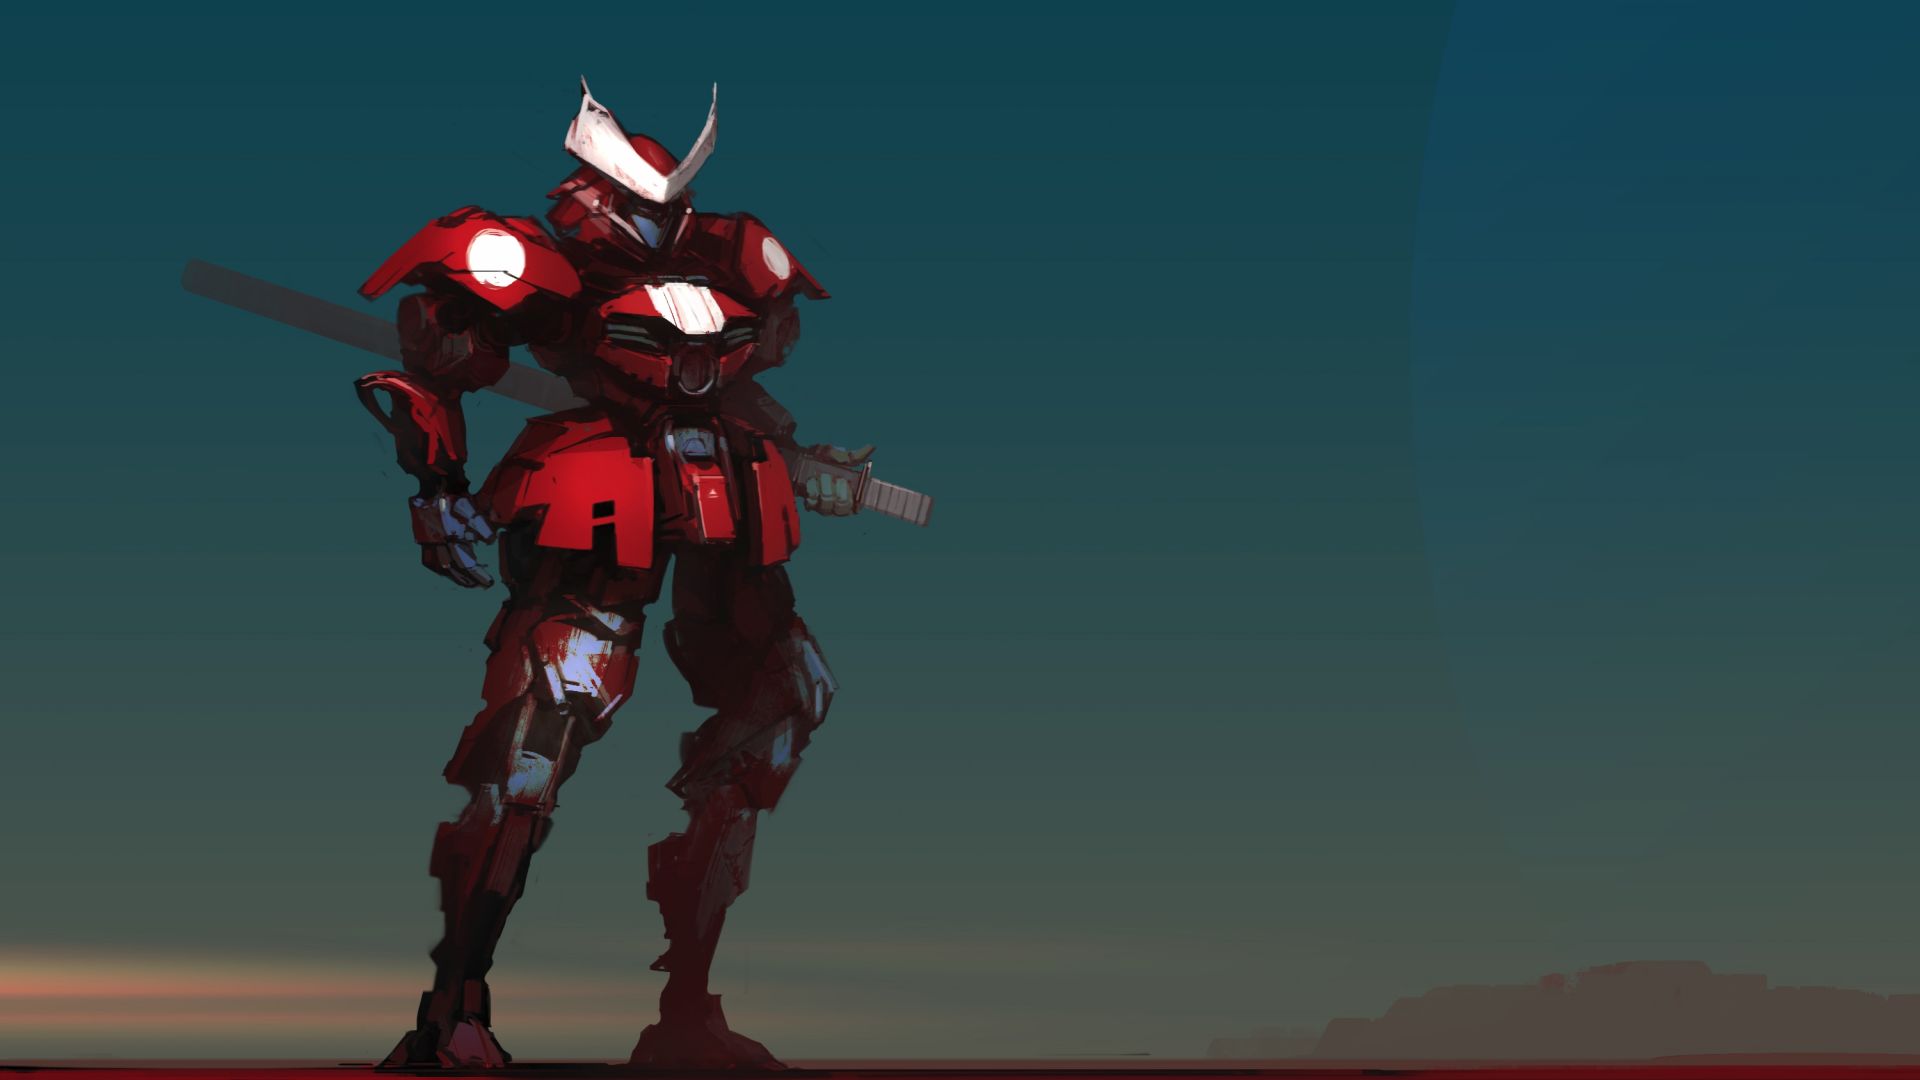 Wallpaper Red, big, samurai, robot, art